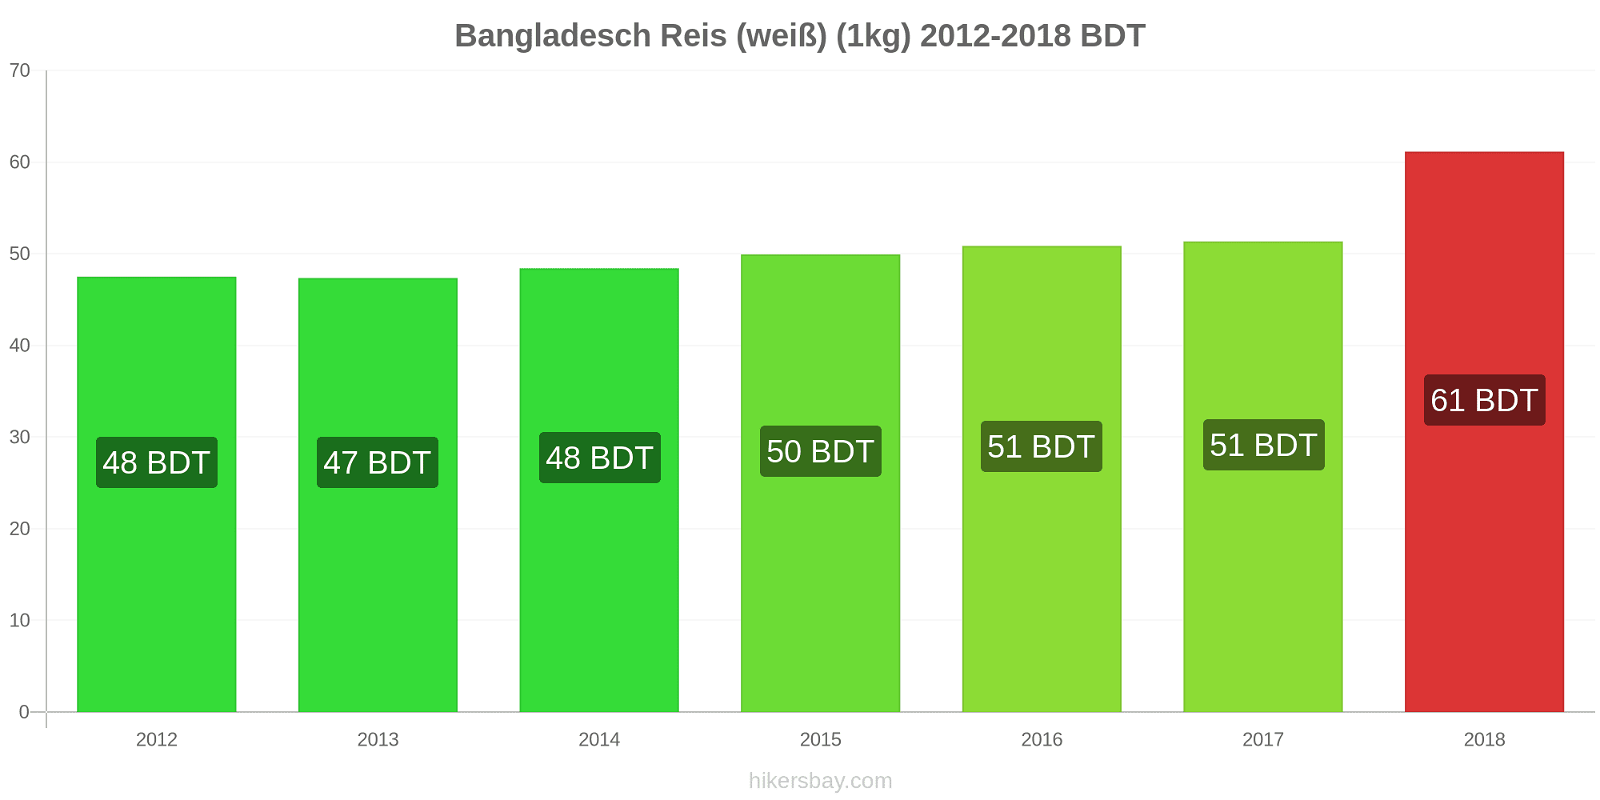 Bangladesch Preisänderungen Reis (weiß) (1kg) hikersbay.com